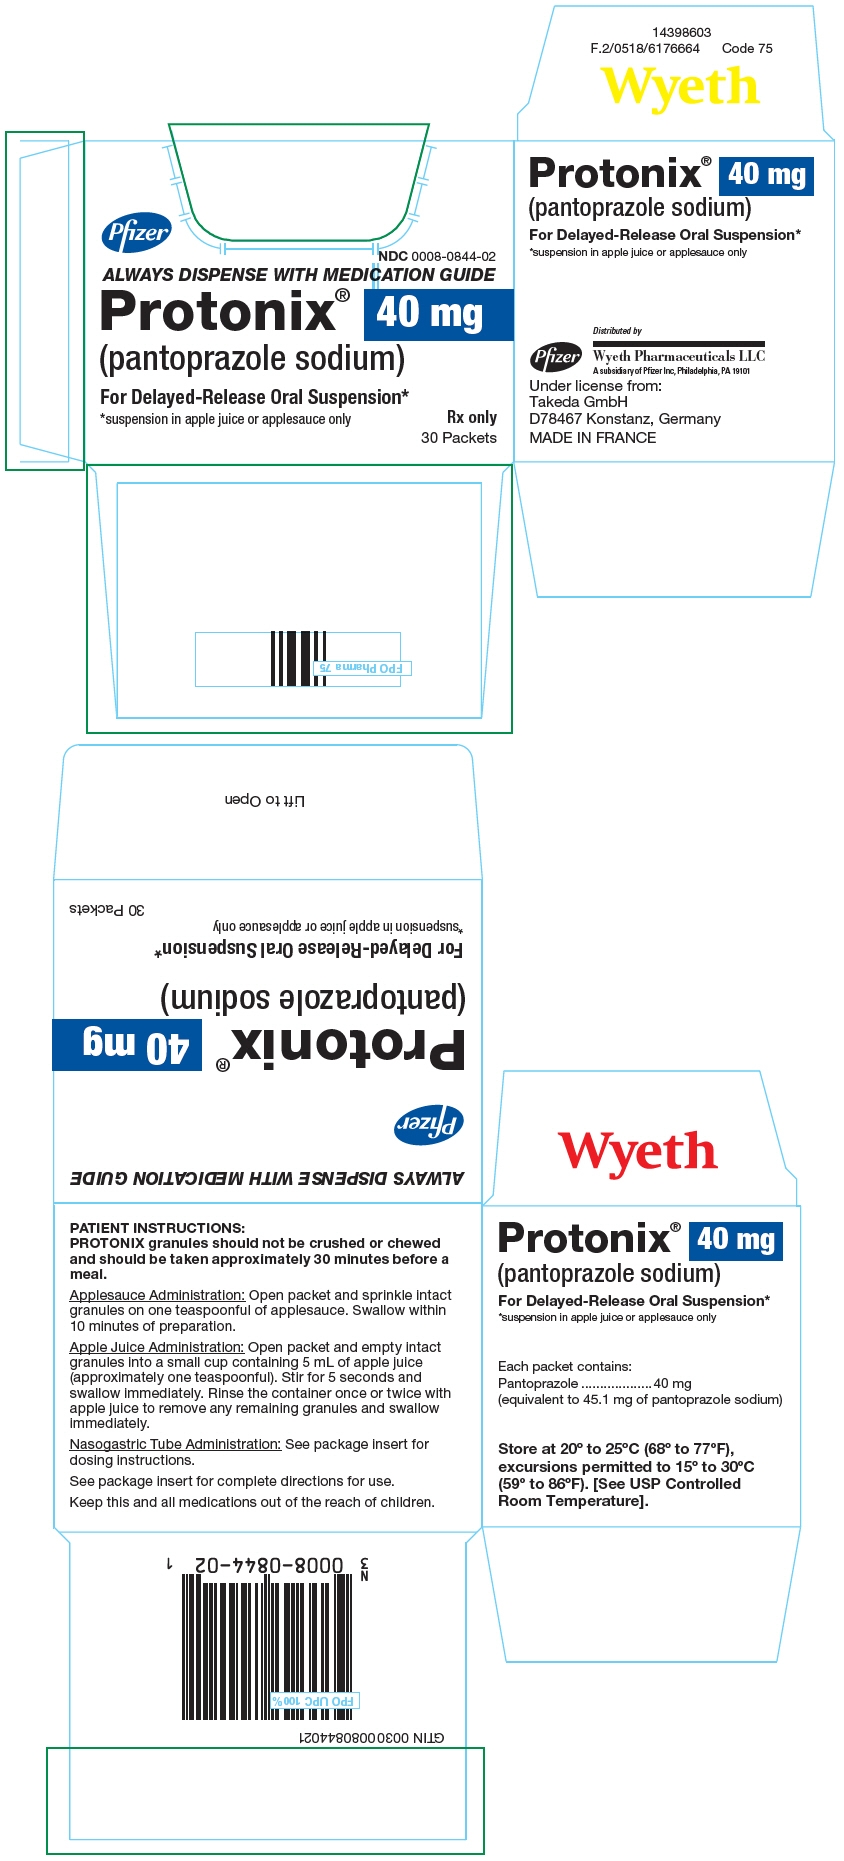 Principal Display Panel - 40 mg Packet Carton